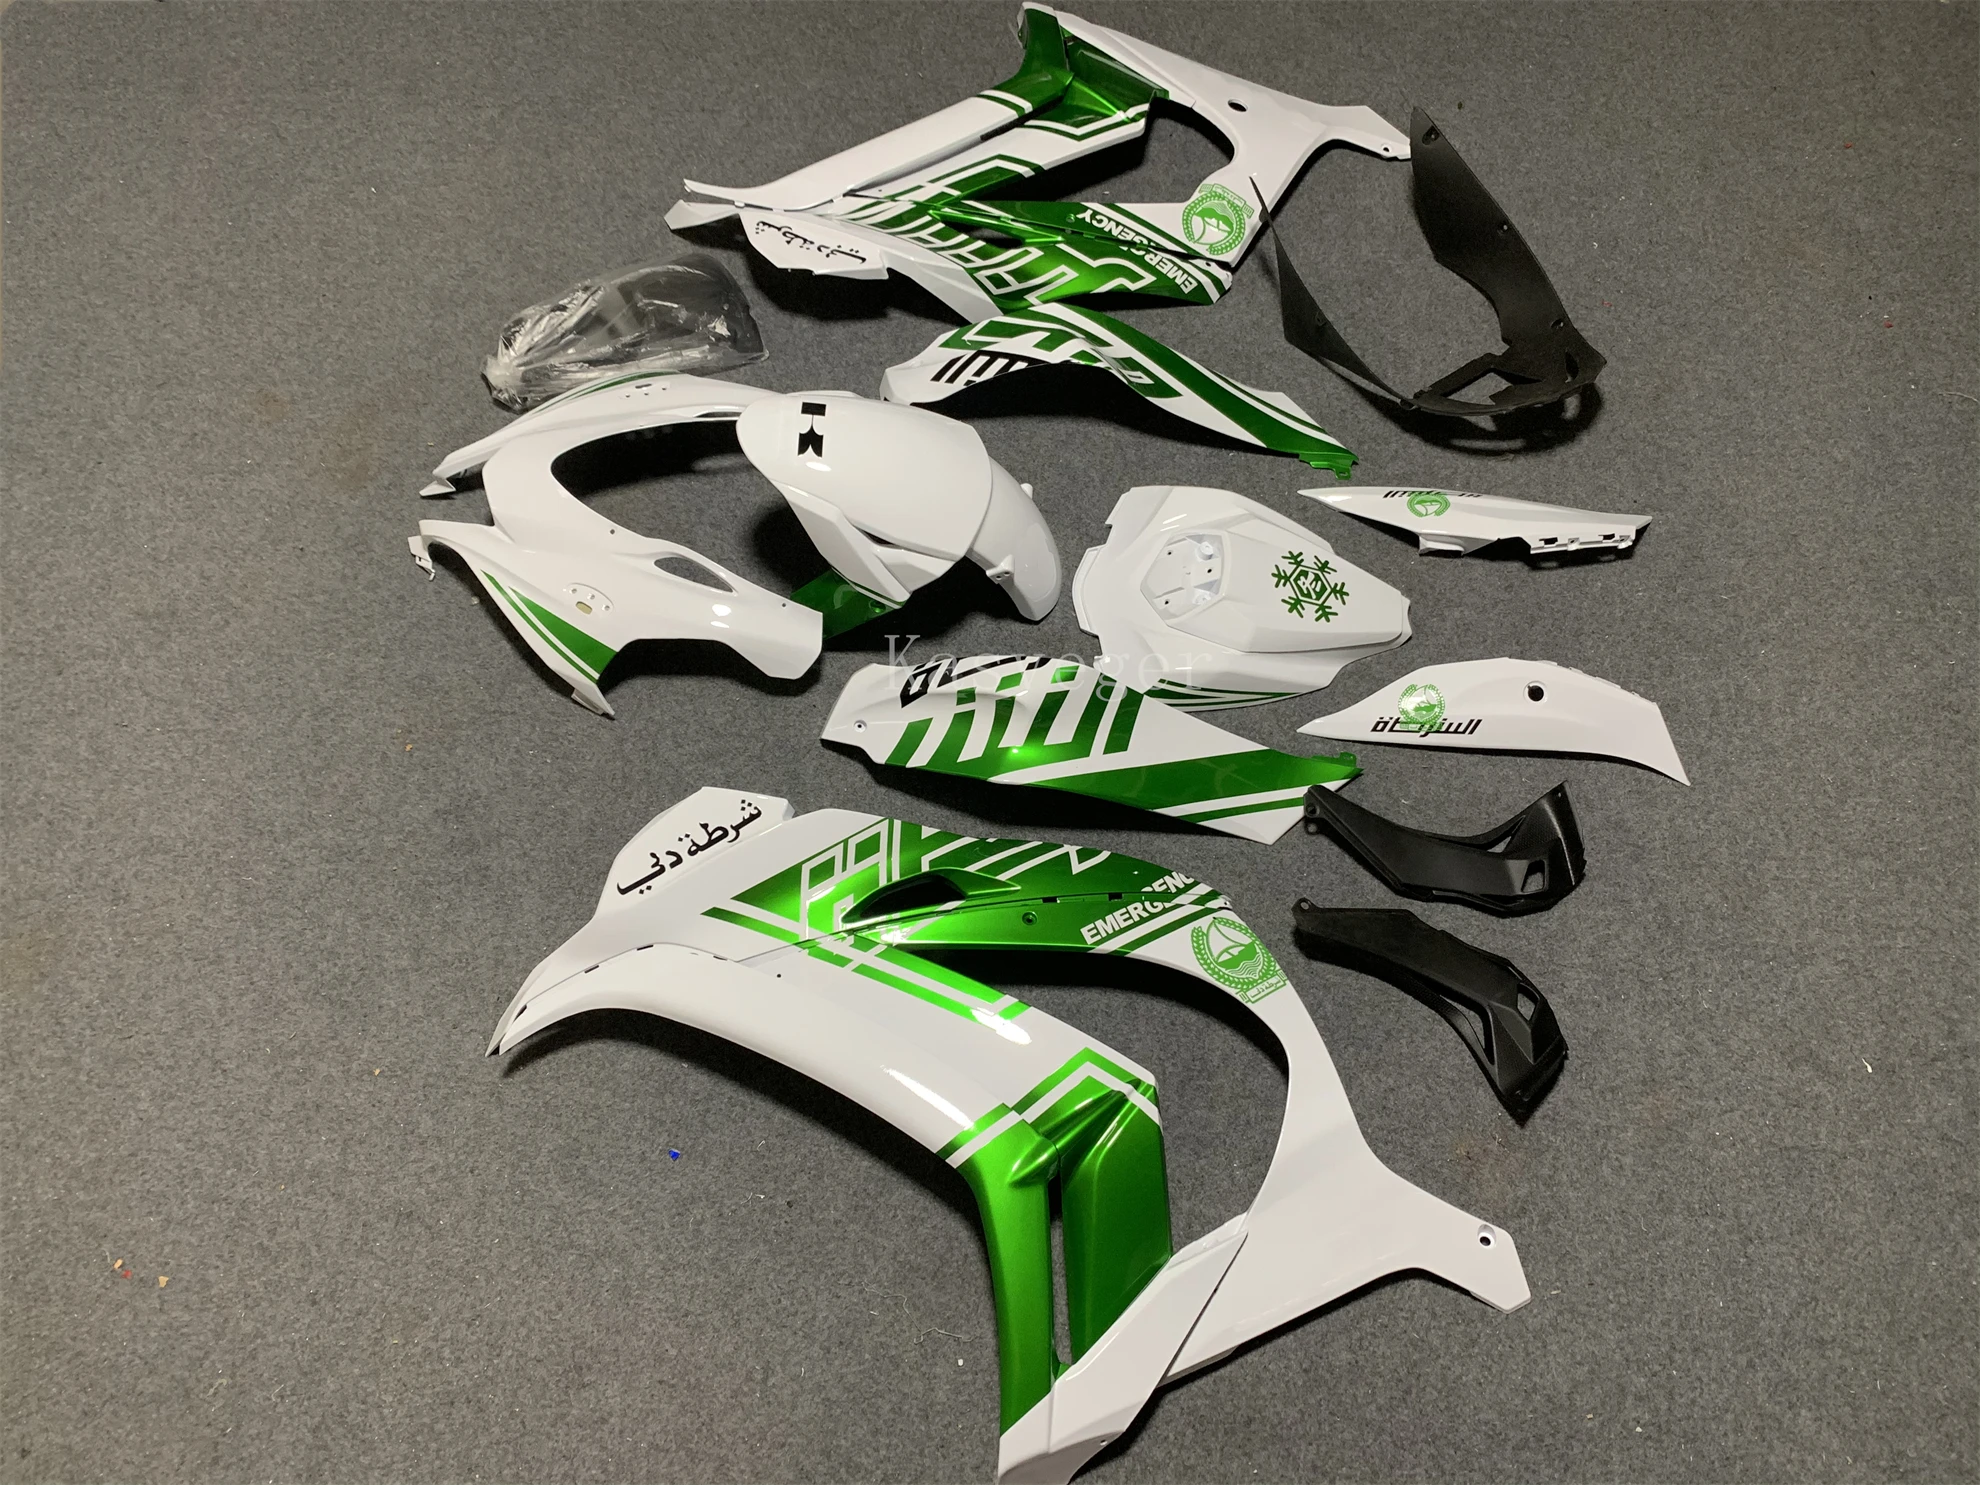 Nuevo ABS Carenado de la Motocicleta Kit de Ajuste Para Kawasaki ZX10R ZX-10R 2016 2017 2018 2019 Carrocería Shell Set Custom Blanco Verde - 2